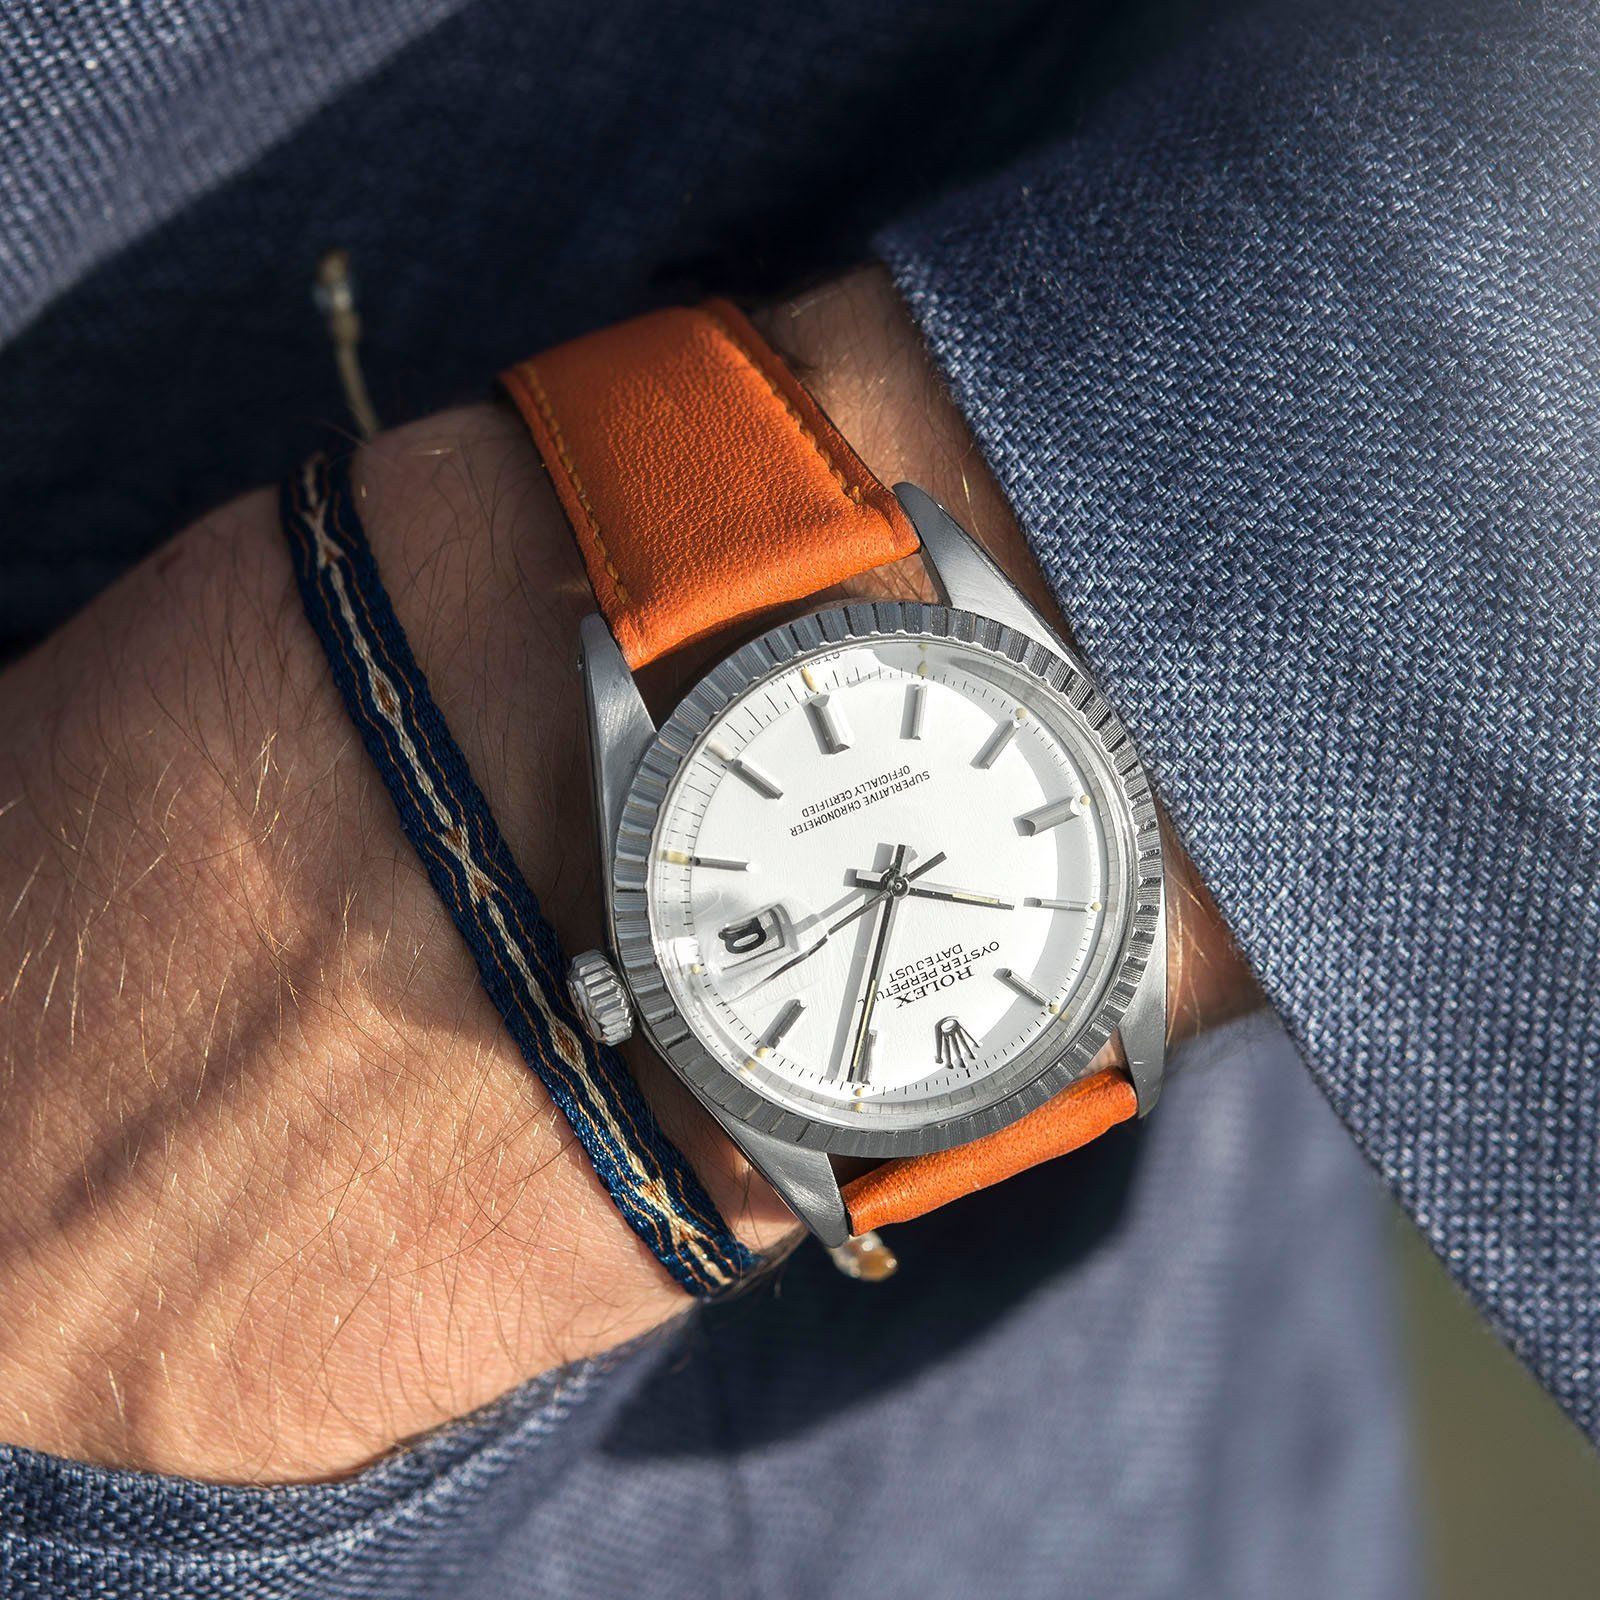 City Orange Leather Watch Strap Rolex Datejust White 1603